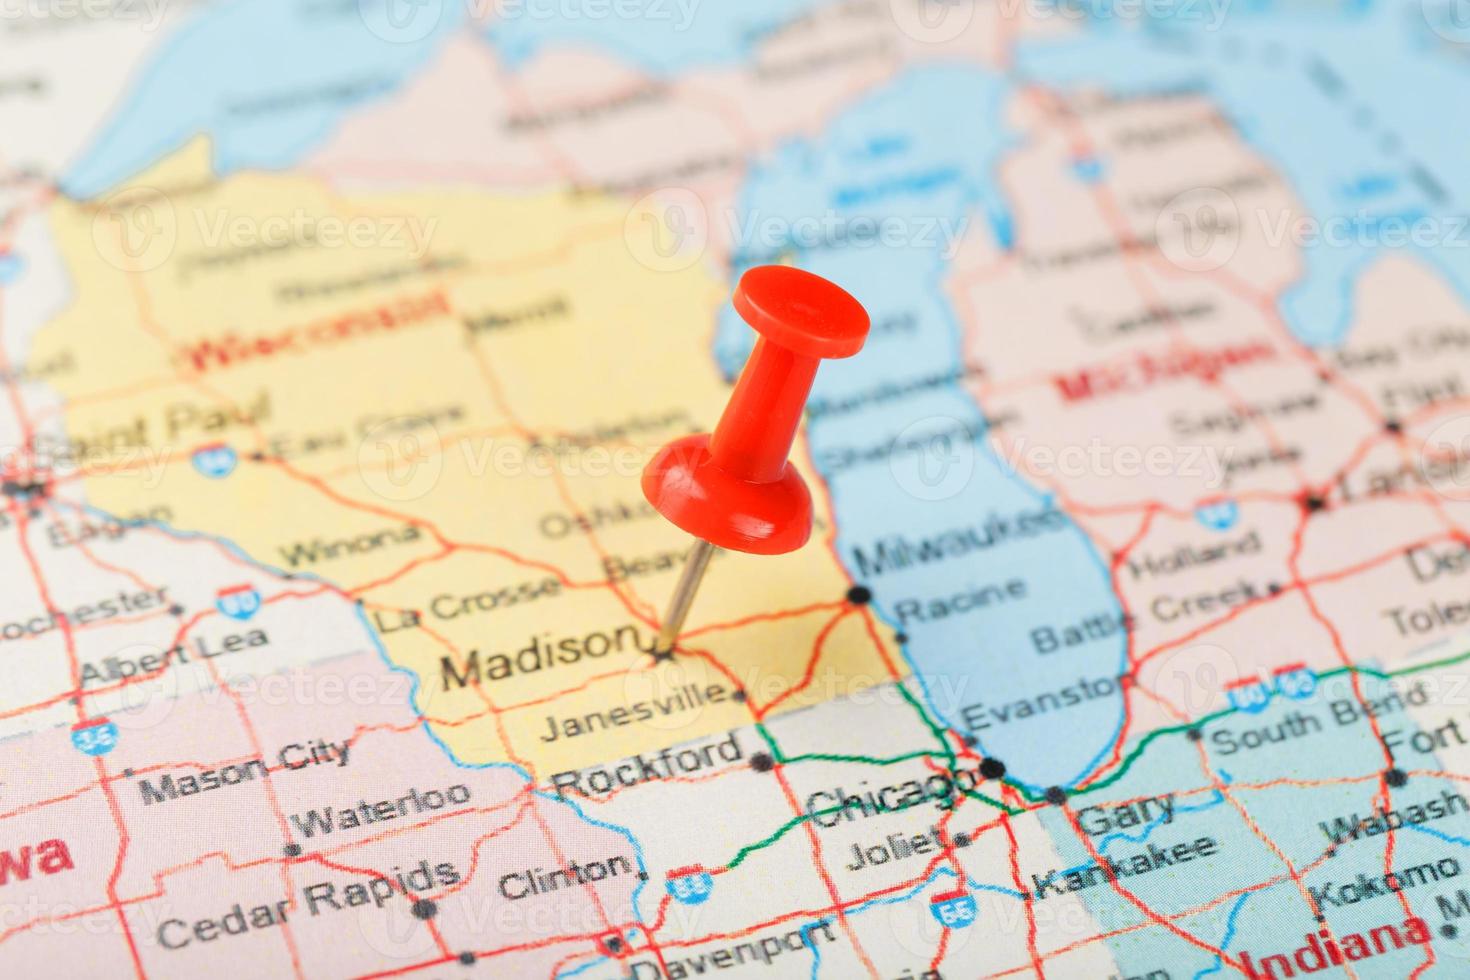 agulha clerical vermelha em um mapa dos eua, michigan e a capital lansing. fechar o mapa de michigan com red tack foto